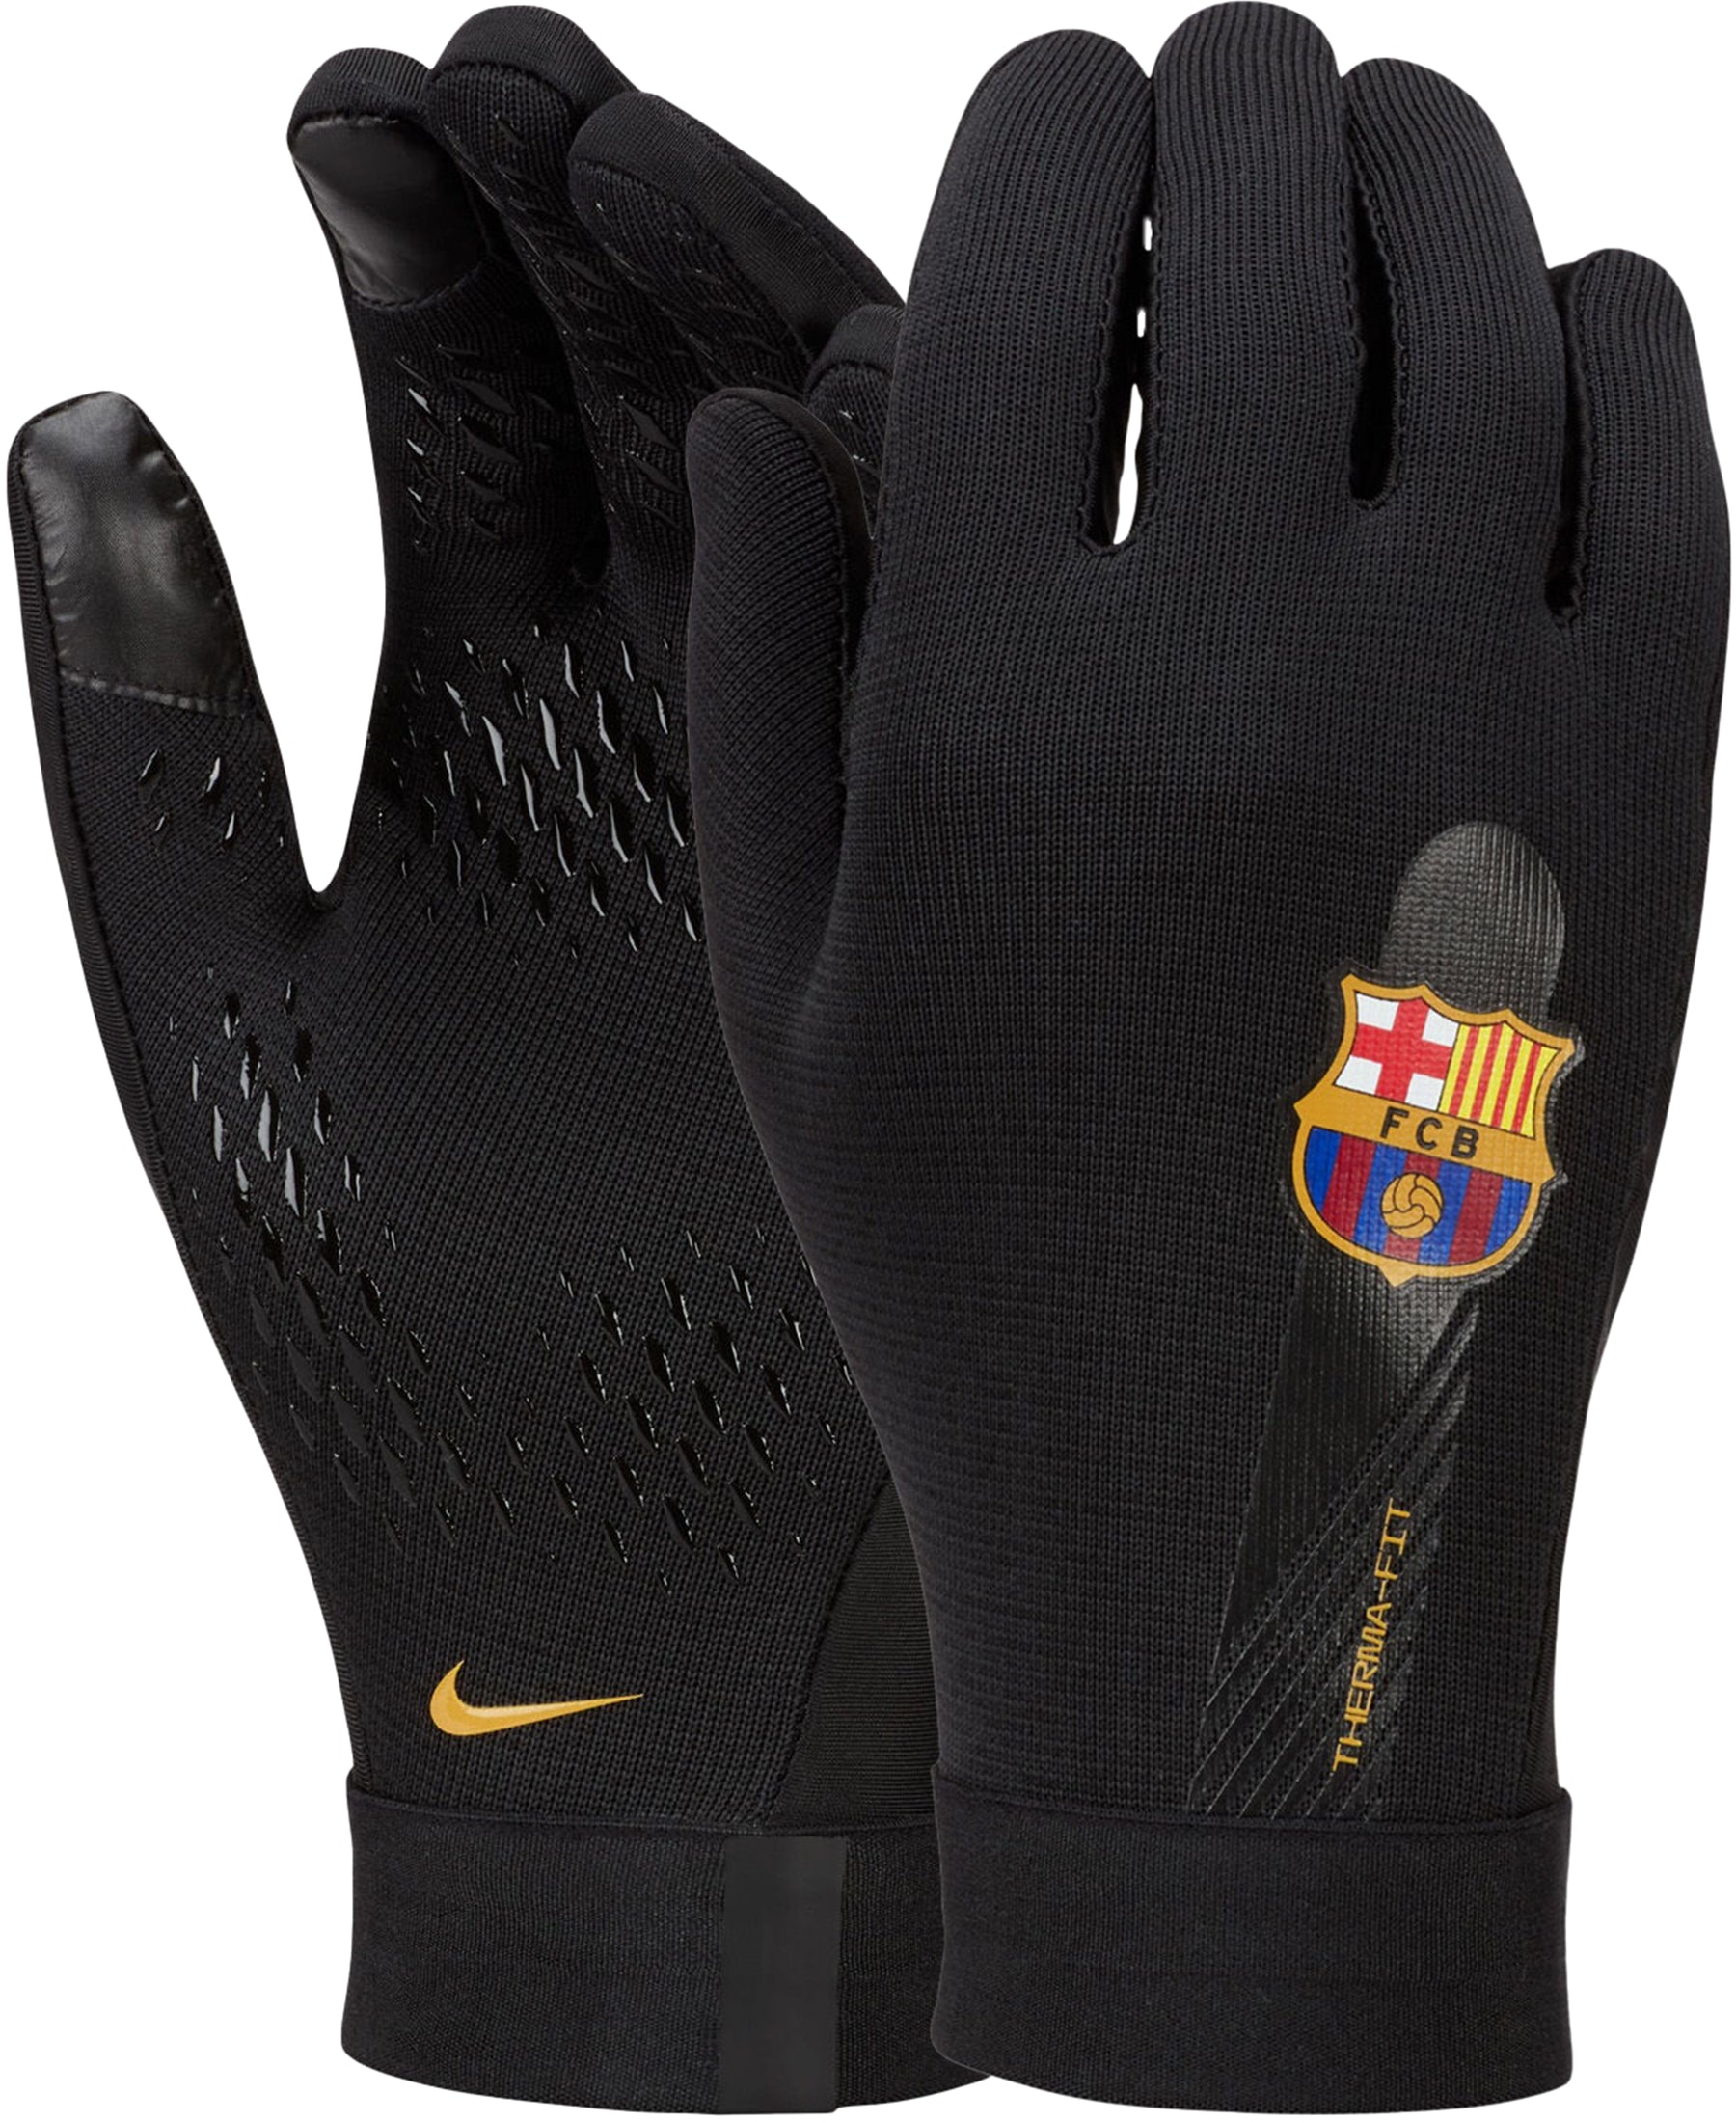 Die Nike FC Barcelona FCB Therma-FIT Academy Spielerhandschuhe (DV3251-010) sind perfekt für Fußballer, die sich in kaltem Wetter auf dem Platz wohl fühlen wollen. Die innovative Therma-FIT-Technologie hält die Hände warm, während das rutschfeste Design den Grip und die Ballkontrolle verbessert. Diese offiziell lizenzierten Handschuhe tragen das FC Barcelona Logo und sind ein Muss für Fans und Spieler. Hol dir jetzt diese hochwertigen Handschuhe bei SHOP4TEAMSPORT.